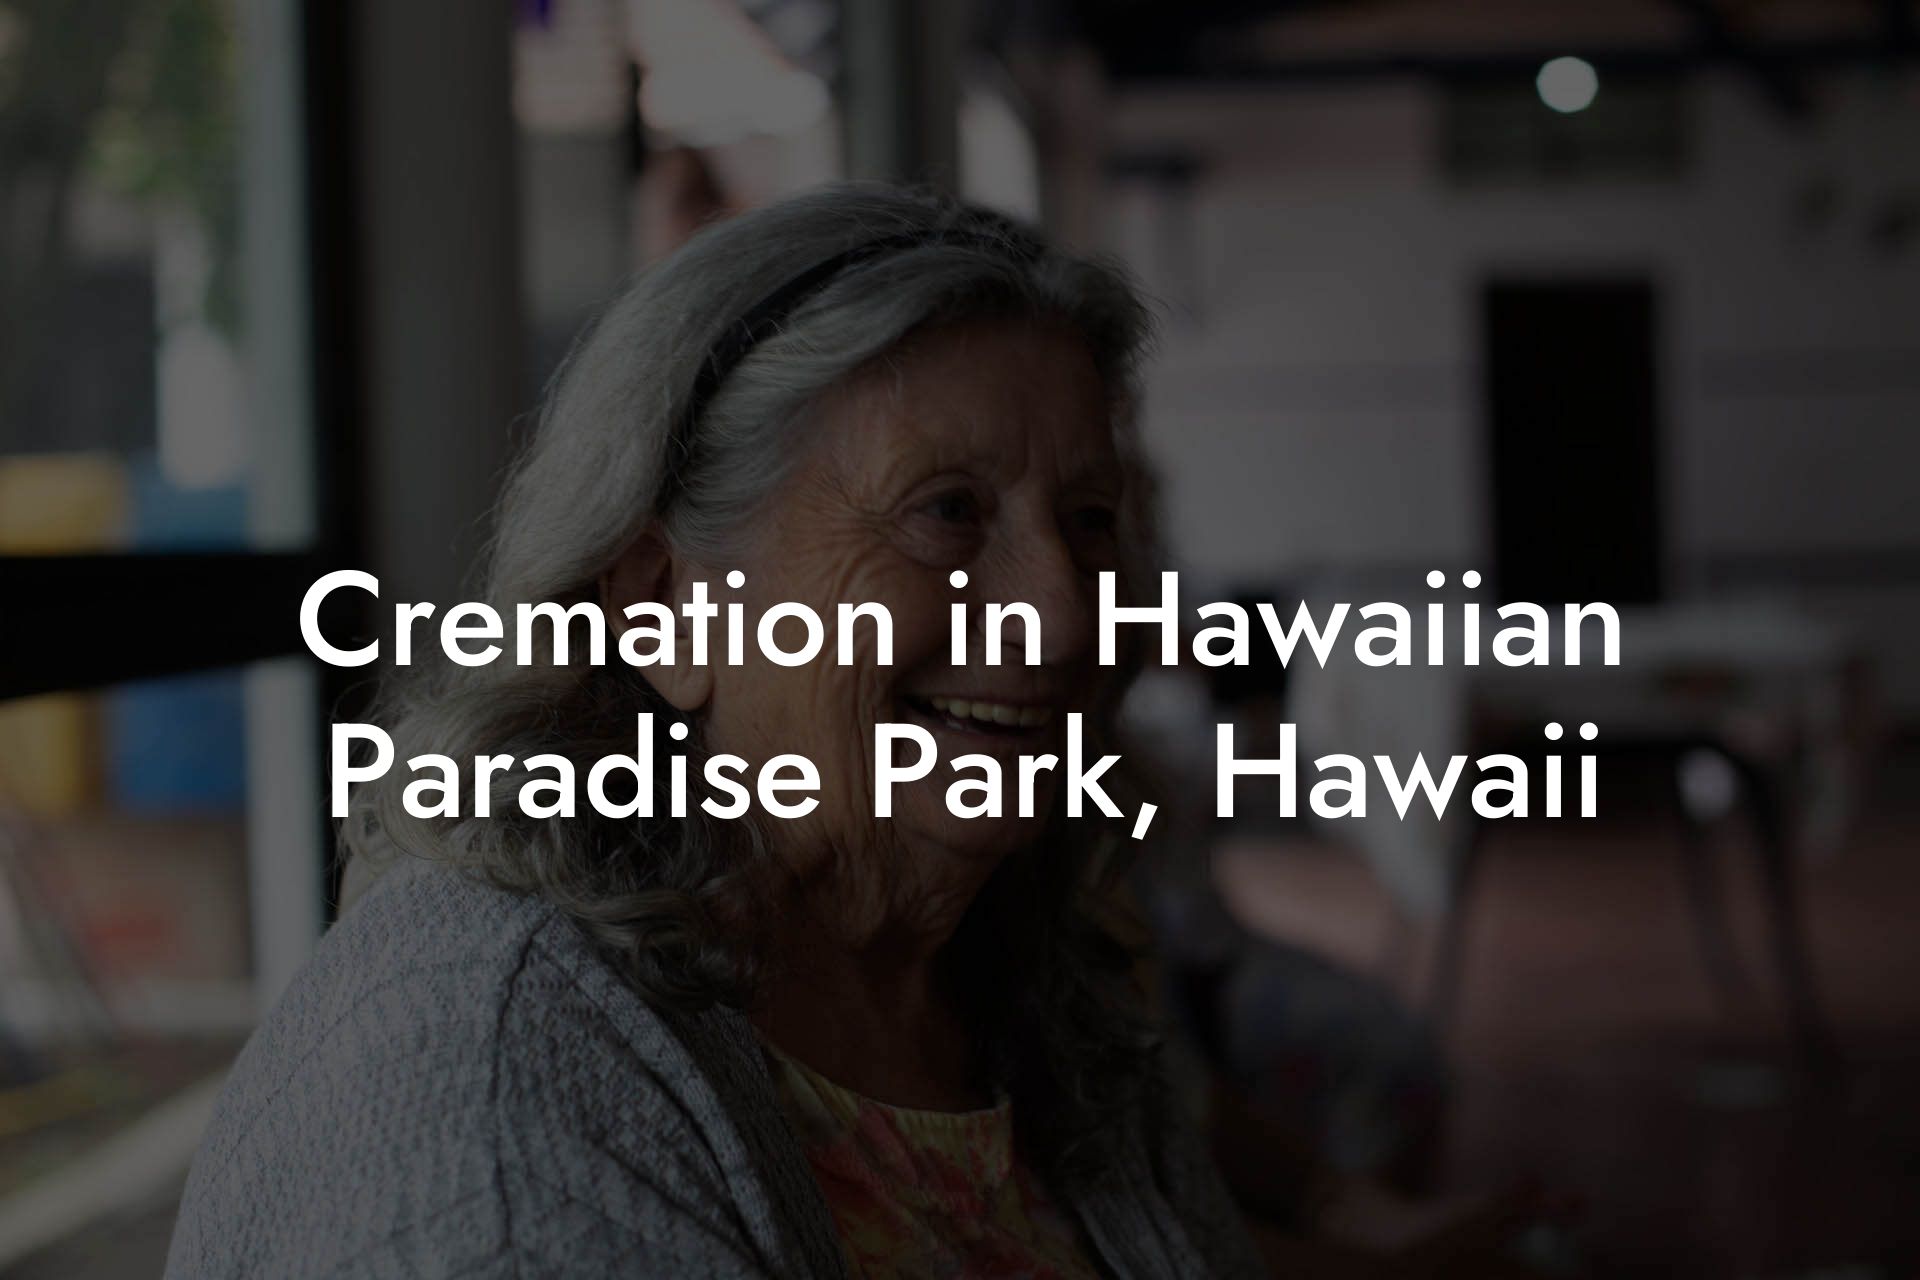 Cremation in Hawaiian Paradise Park, Hawaii